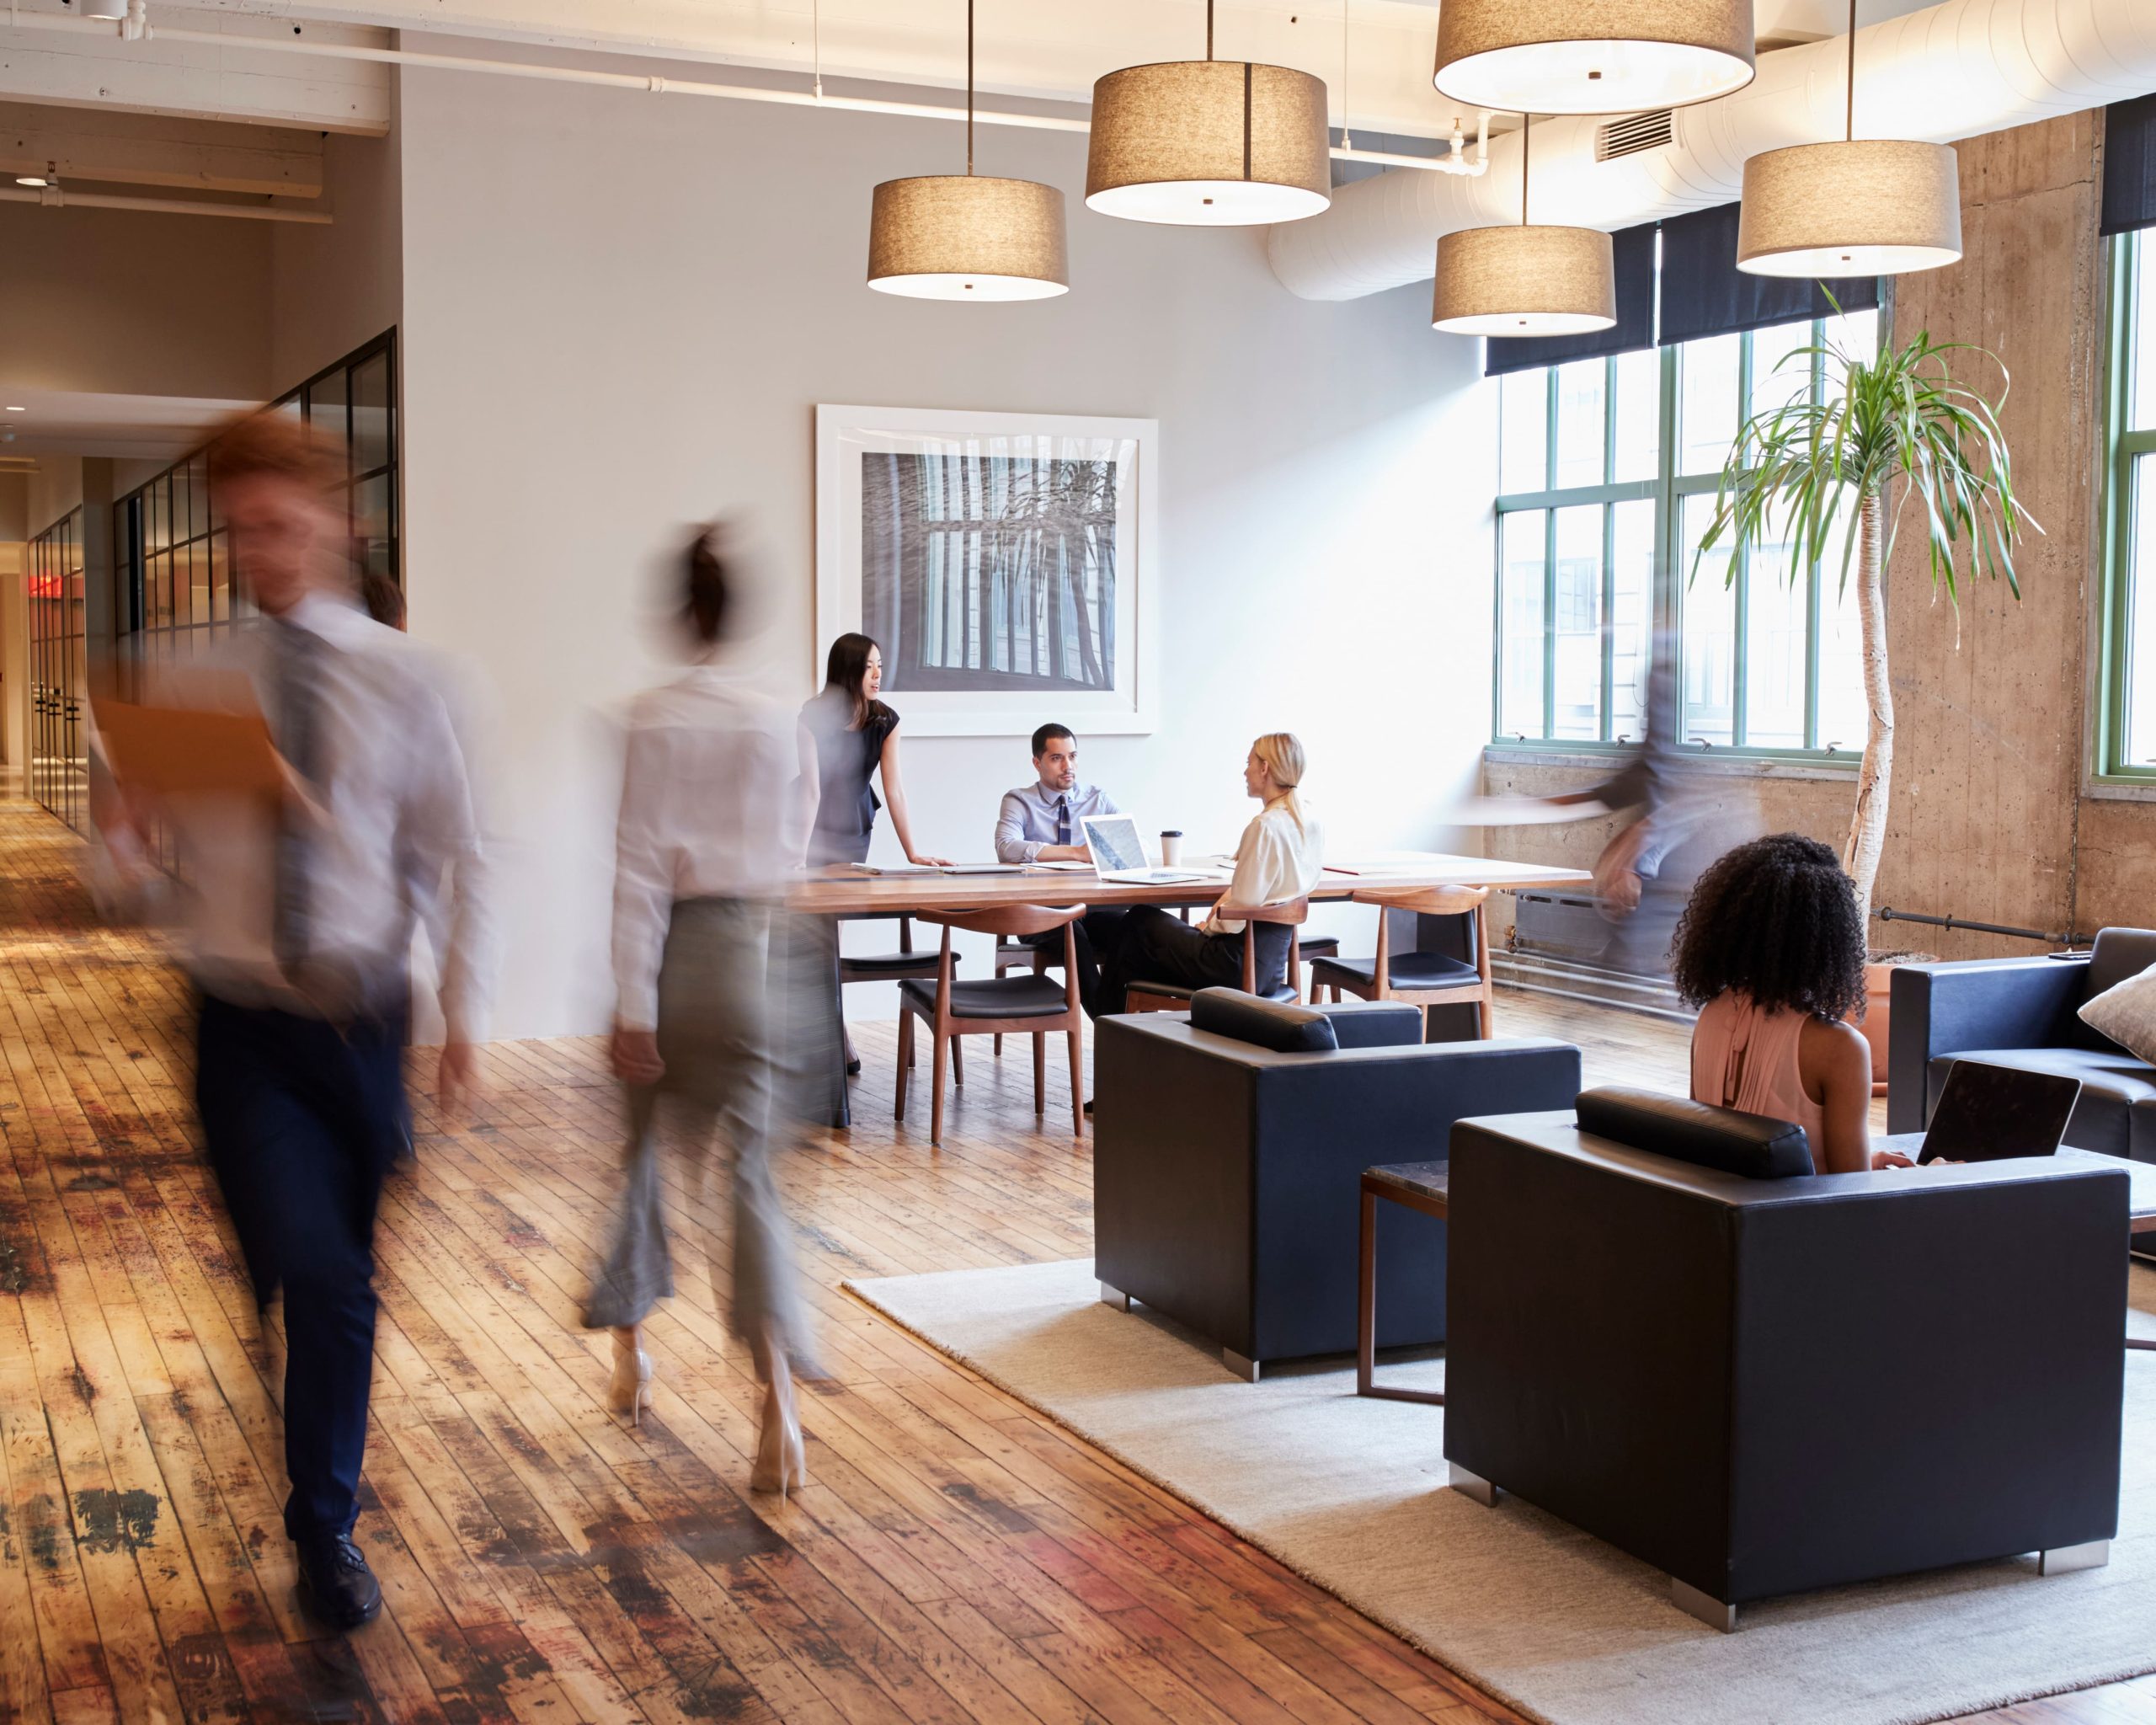 Oficina moderna con empleados trabajando y moviéndose, creando un ambiente dinámico y colaborativo.